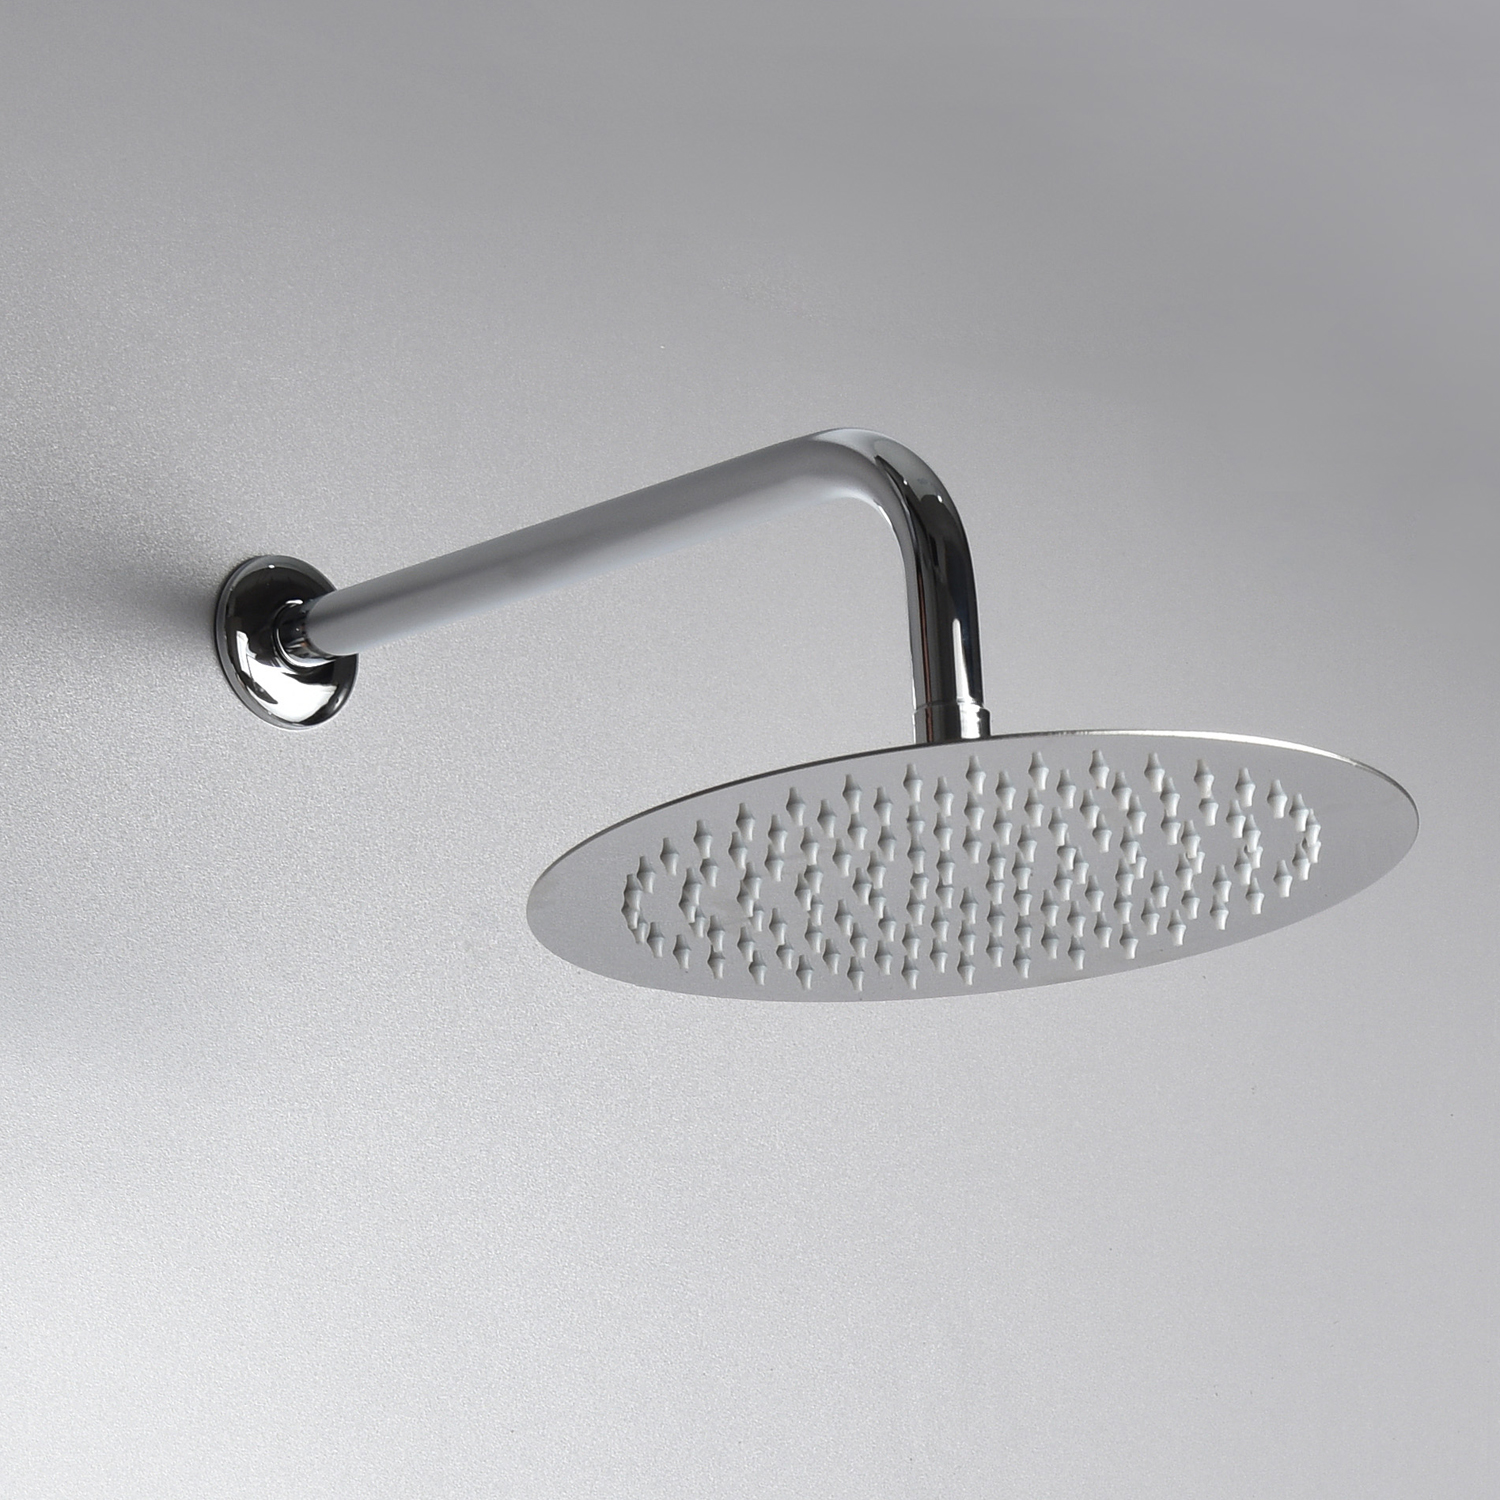 Soffione Doccia tondo in acciaio ultra slim diametro 25 cm con braccio -  Cerama Shop Online di igienico-sanitari ed accessori per il bagno